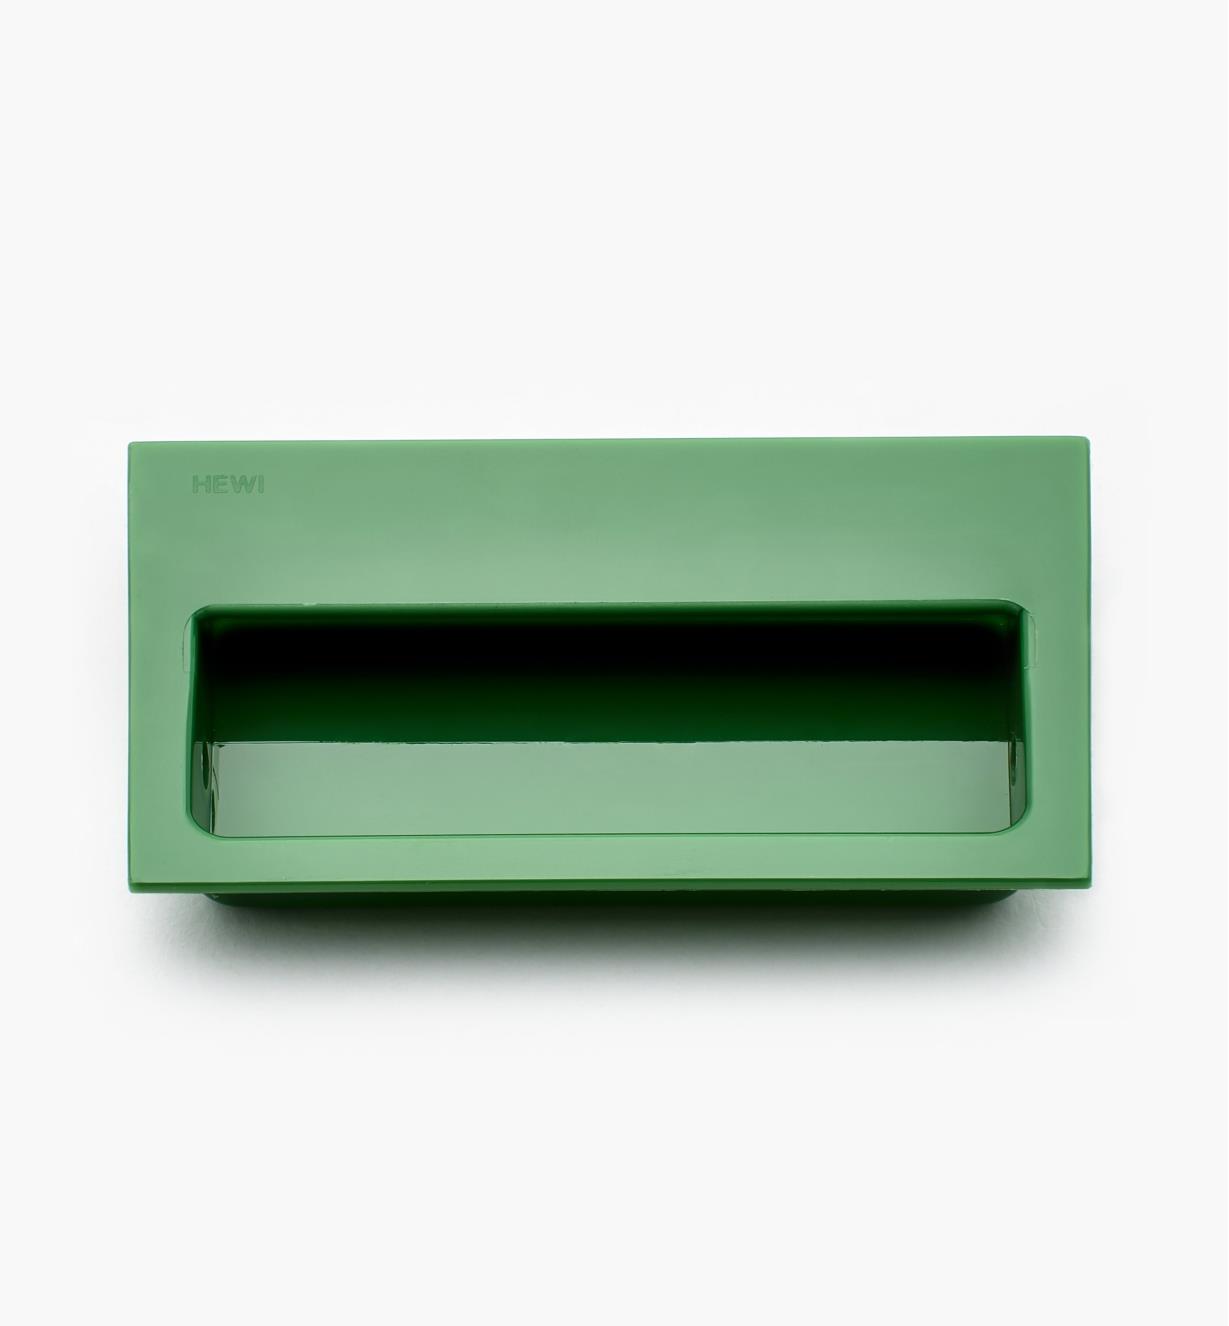 01W4108 - Poignée rectangulaire encastrée, vert, 100 mm x 60 mm